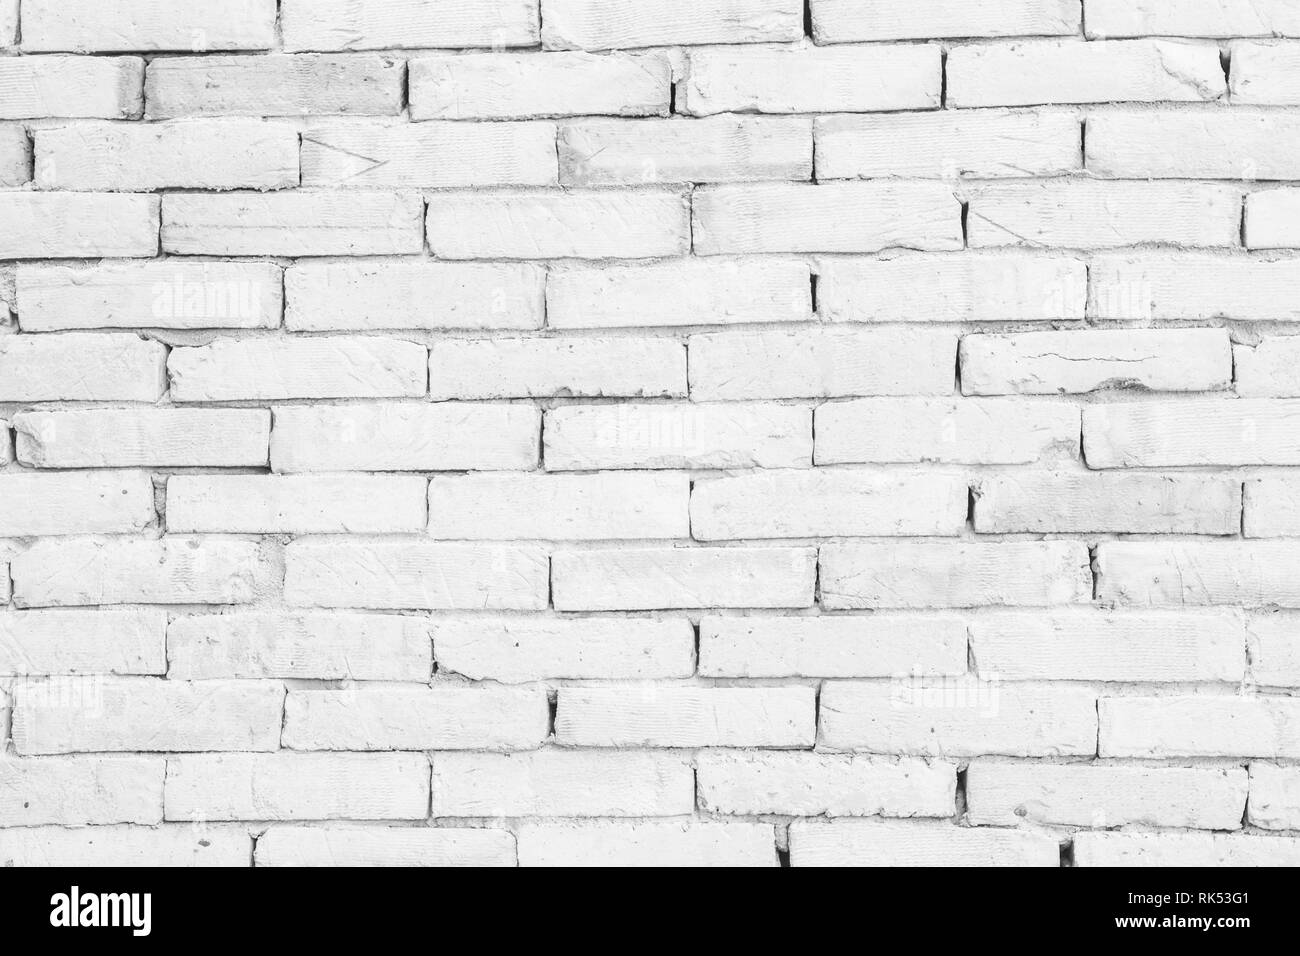 Le noir et blanc mur texture background / avoir moi sur des revêtements de pierre roche vieux modèle béton clair inégale grille design moderne et la pile de briques Banque D'Images